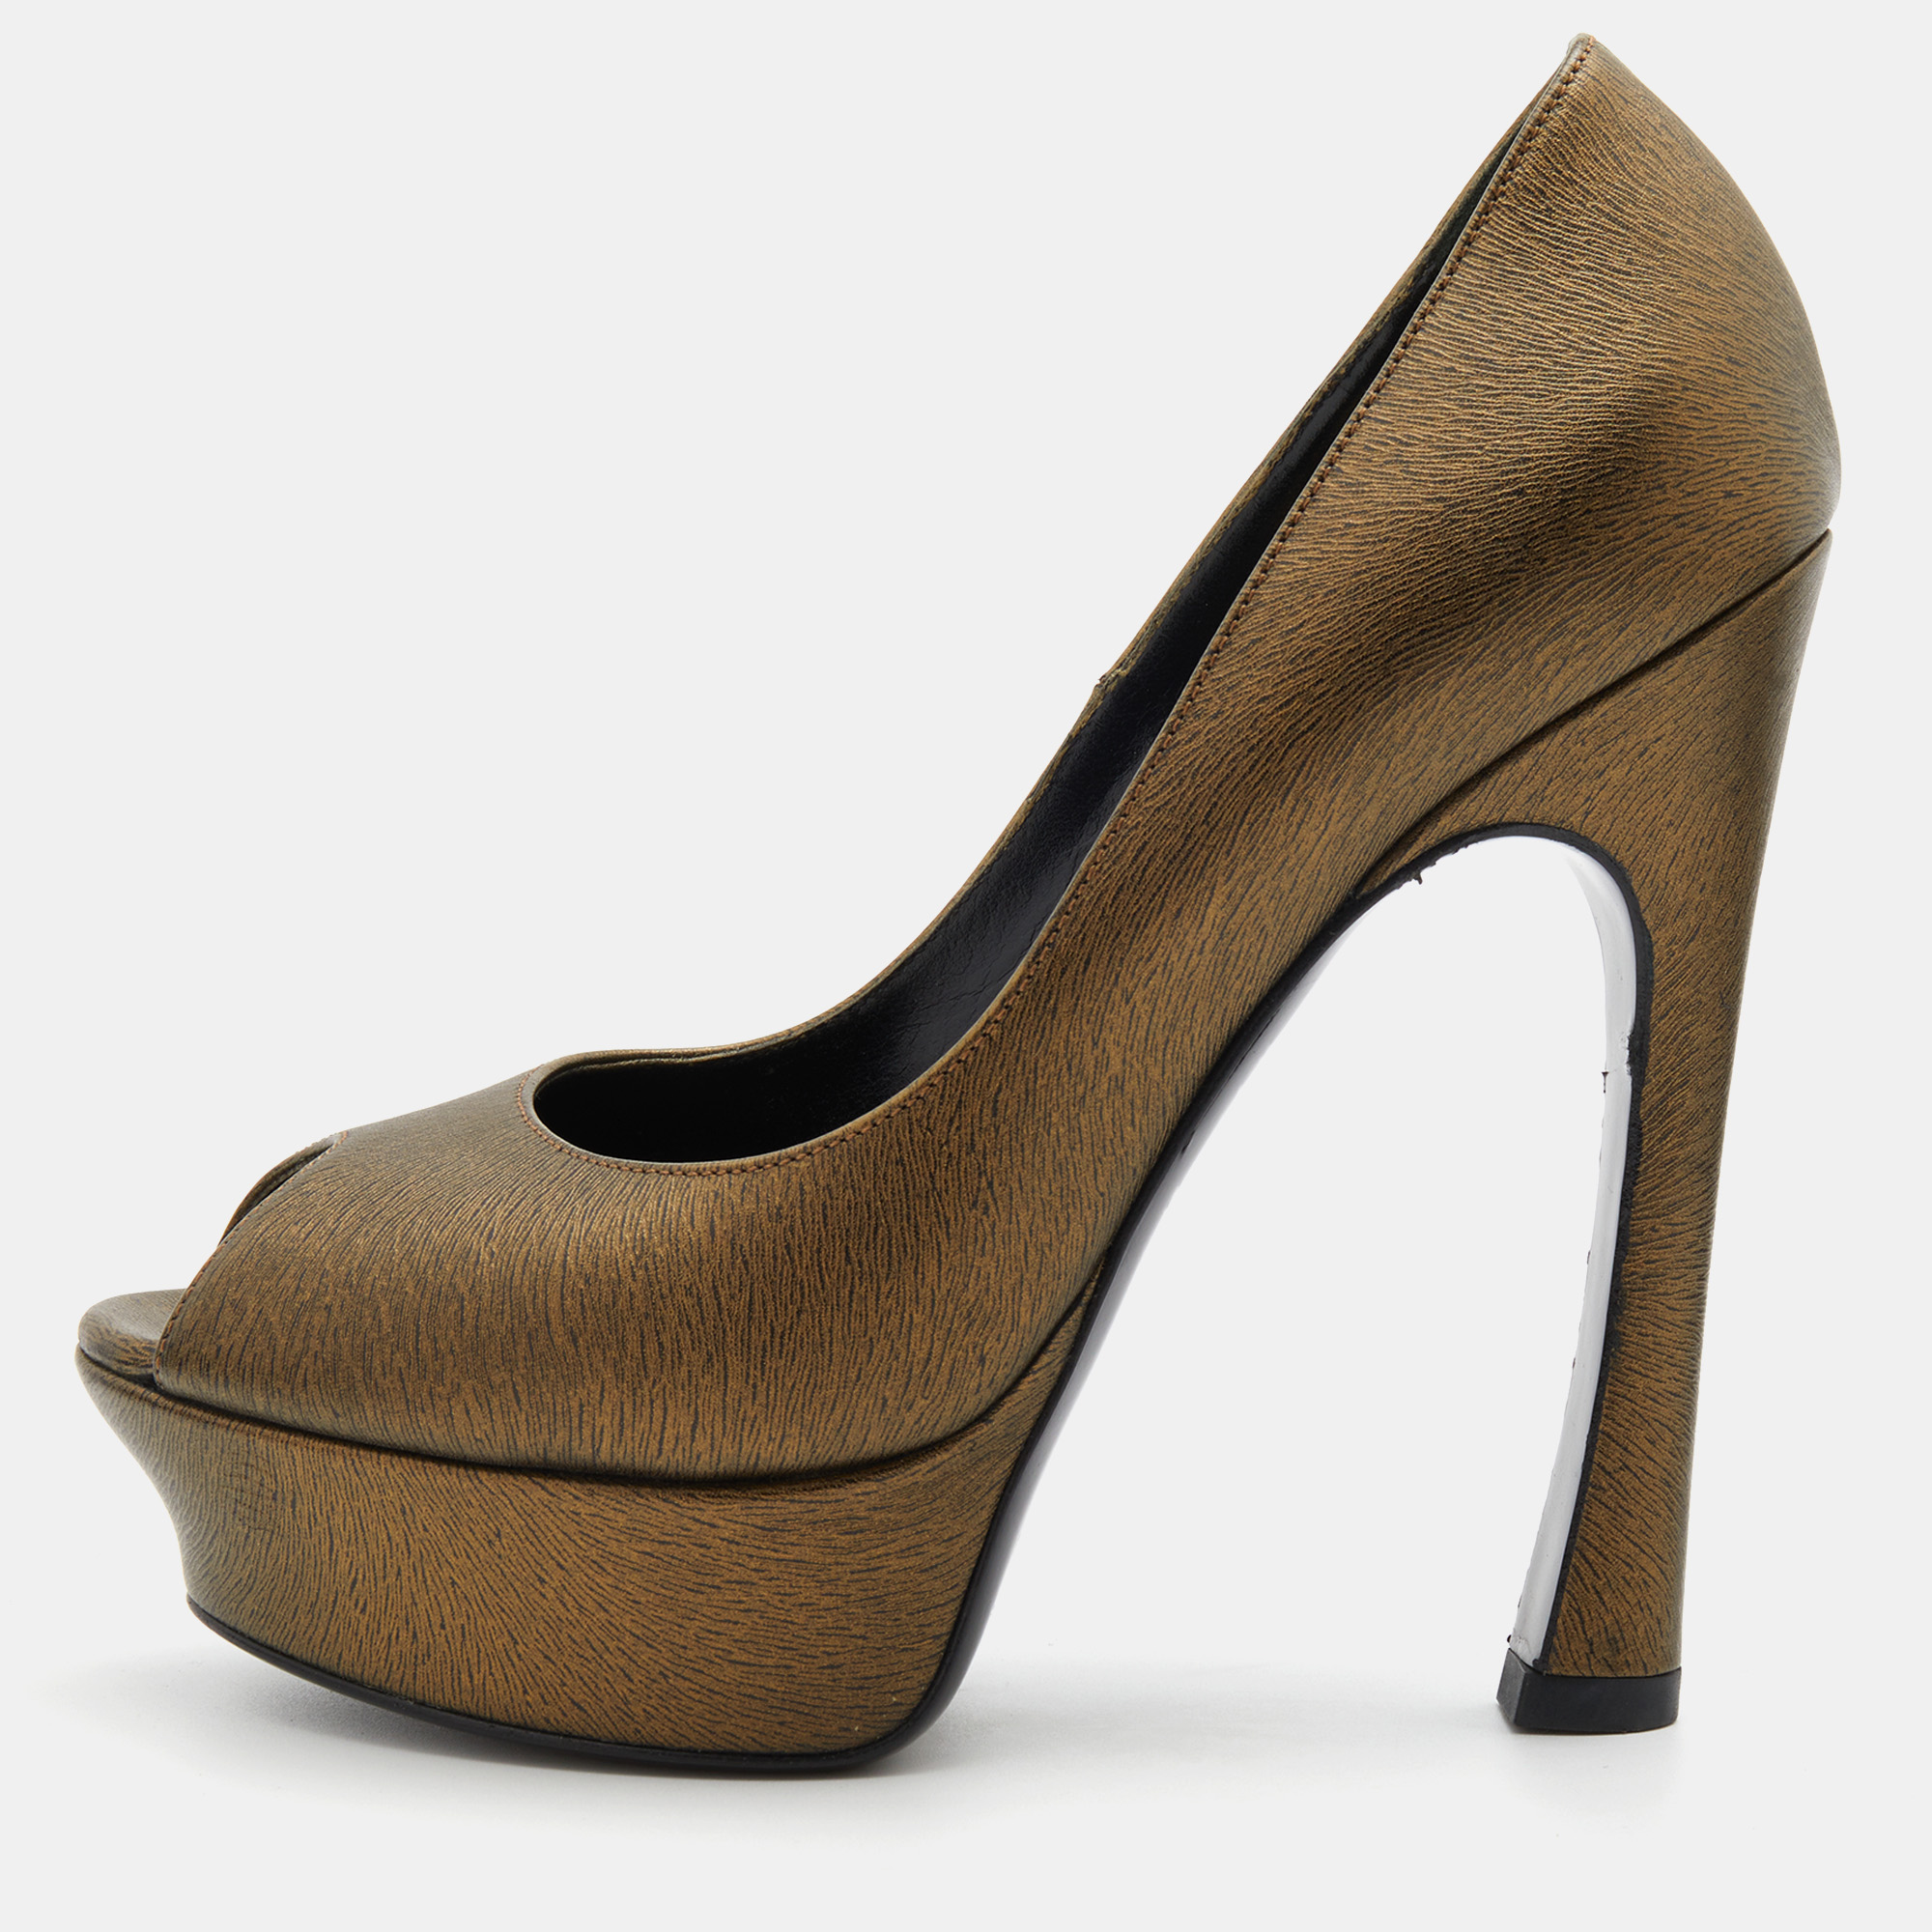 Yves saint laurent brown leather palais platform peep toe pumps size 36.5